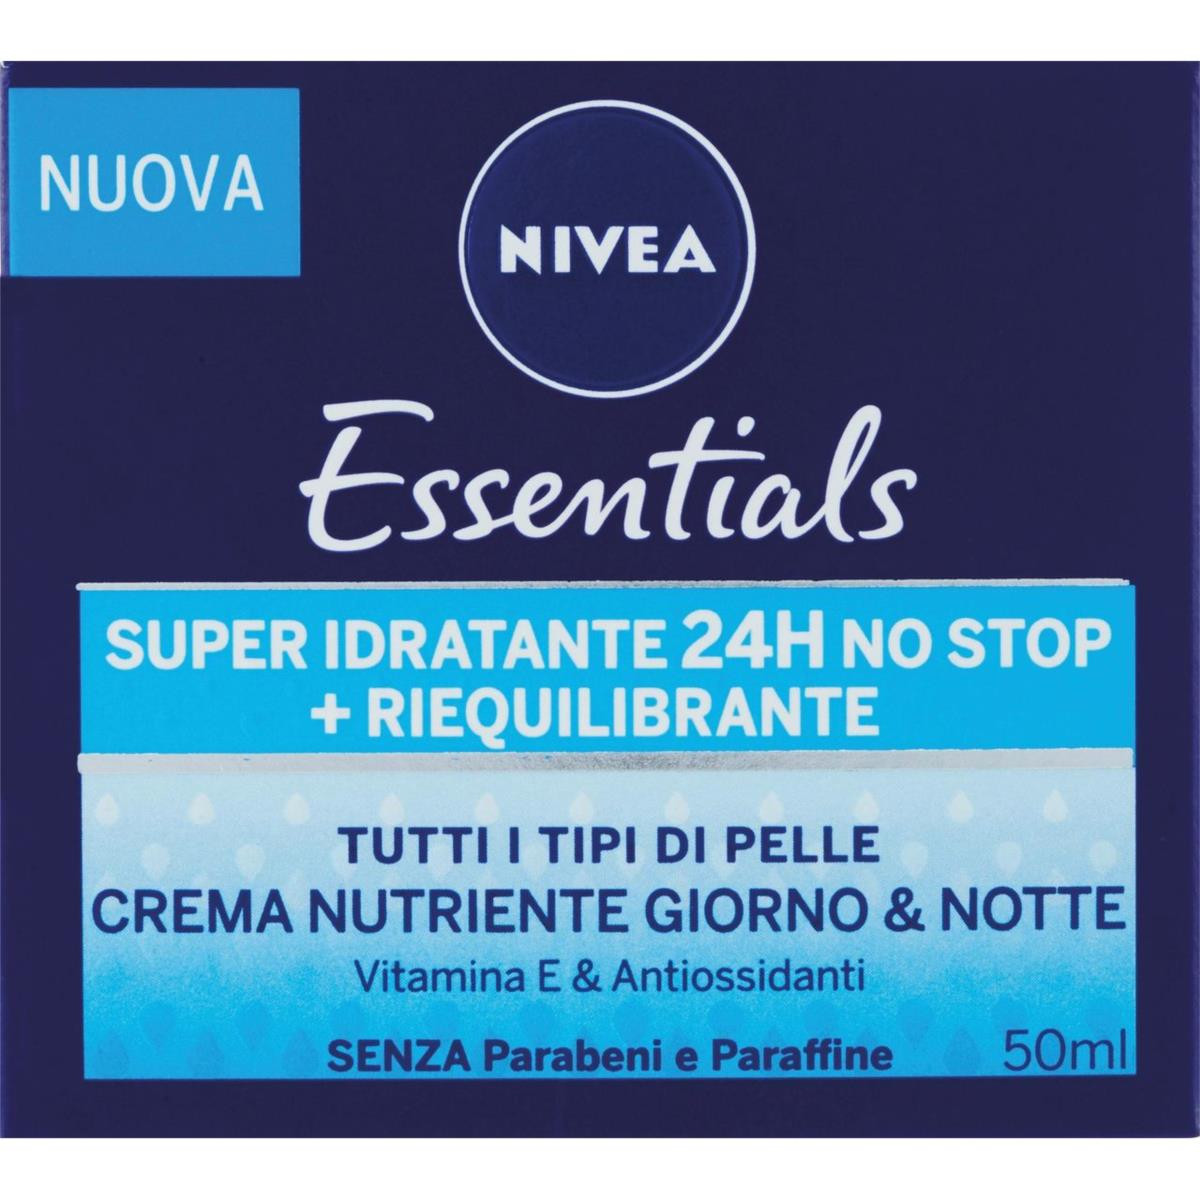 Nivea Essentials Super Idratante 24H No Stop + Riequilibrante Crema Nutriente Giorno & Notte 50 ml